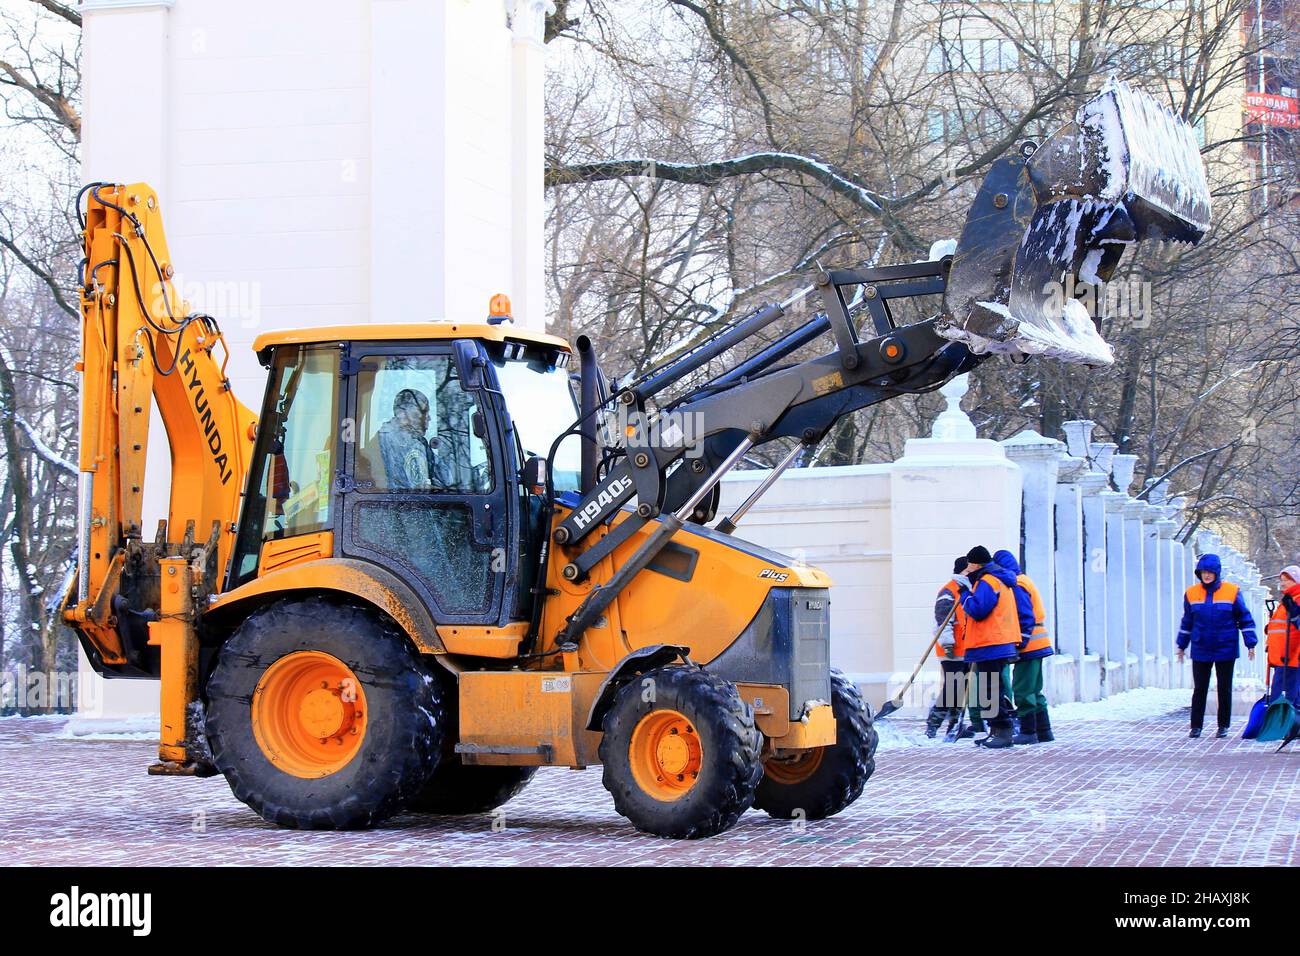 Nettoyage d'hiver des rues de la ville.En hiver, une grande pelle élimine la neige fraîche d'une rue enneigée.Dnipro City, Dnepr, Ukraine 2020-12-06 Banque D'Images